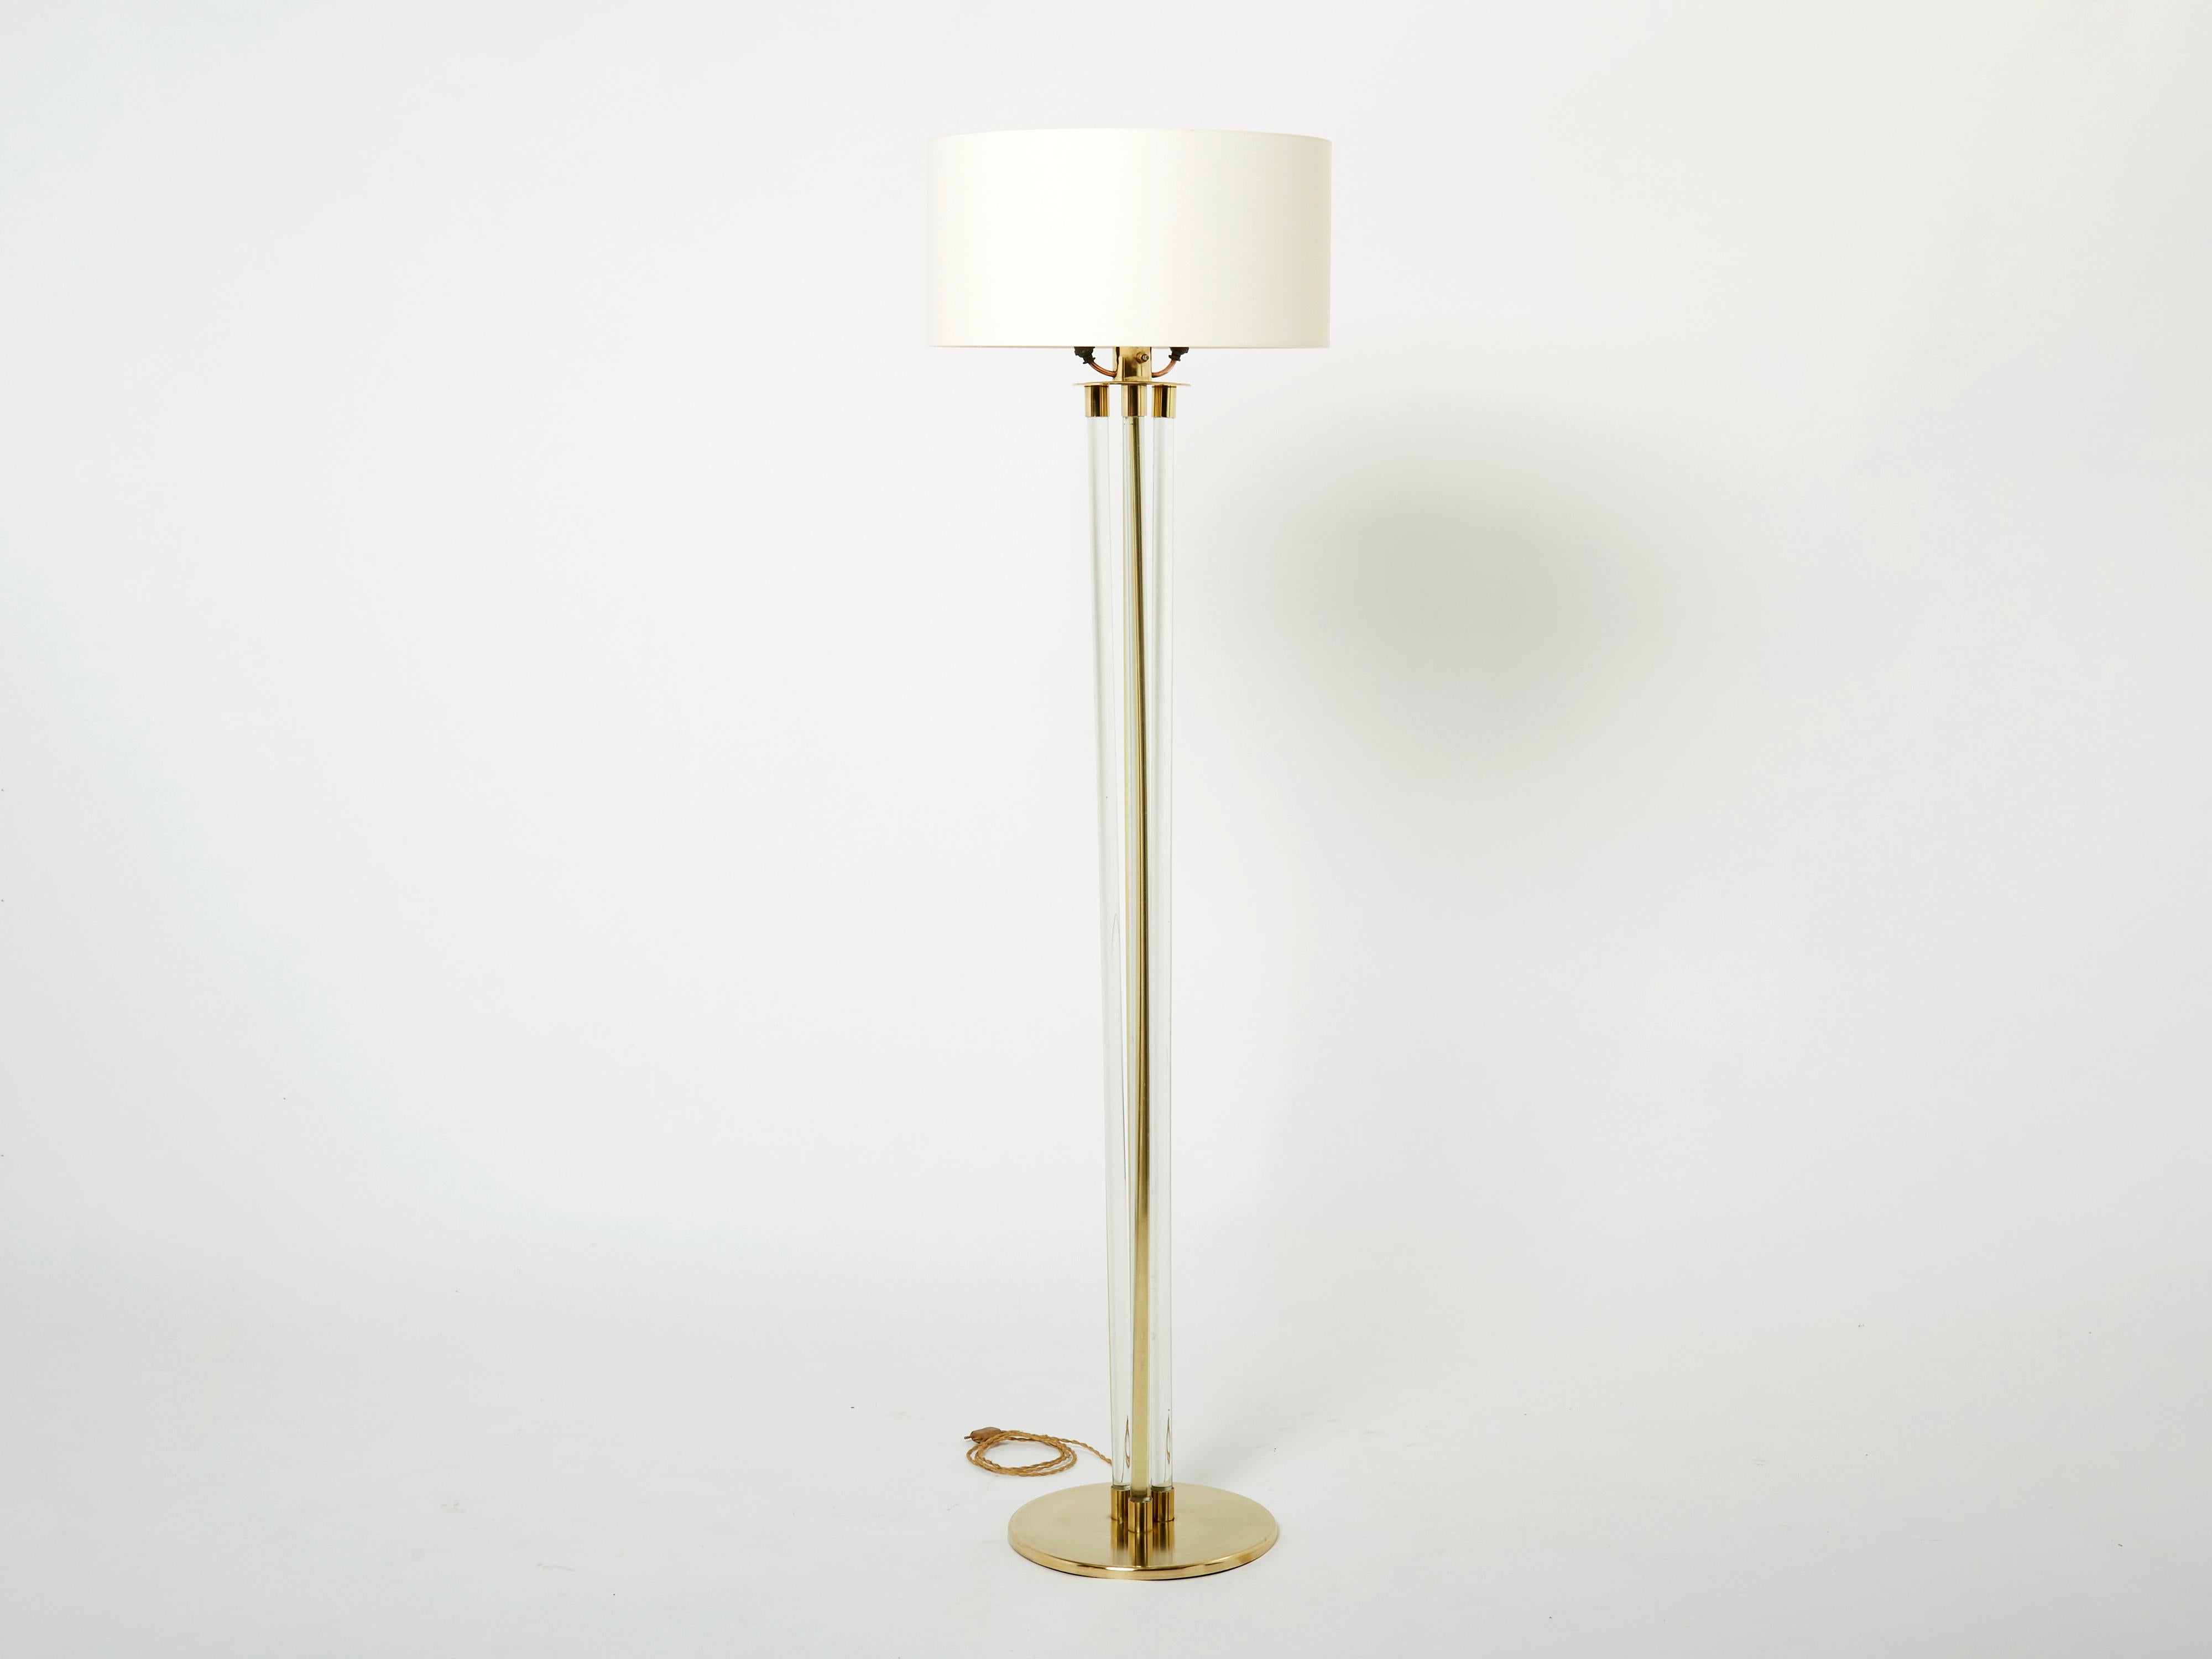 Ce magnifique lampadaire Jacques Adnet ne manquera pas d'ajouter un élément de modernisme français à n'importe quelle pièce de votre maison. Il a été conçu et produit par Jacques Adnet au début des années 1950. Avec une structure en laiton massif et